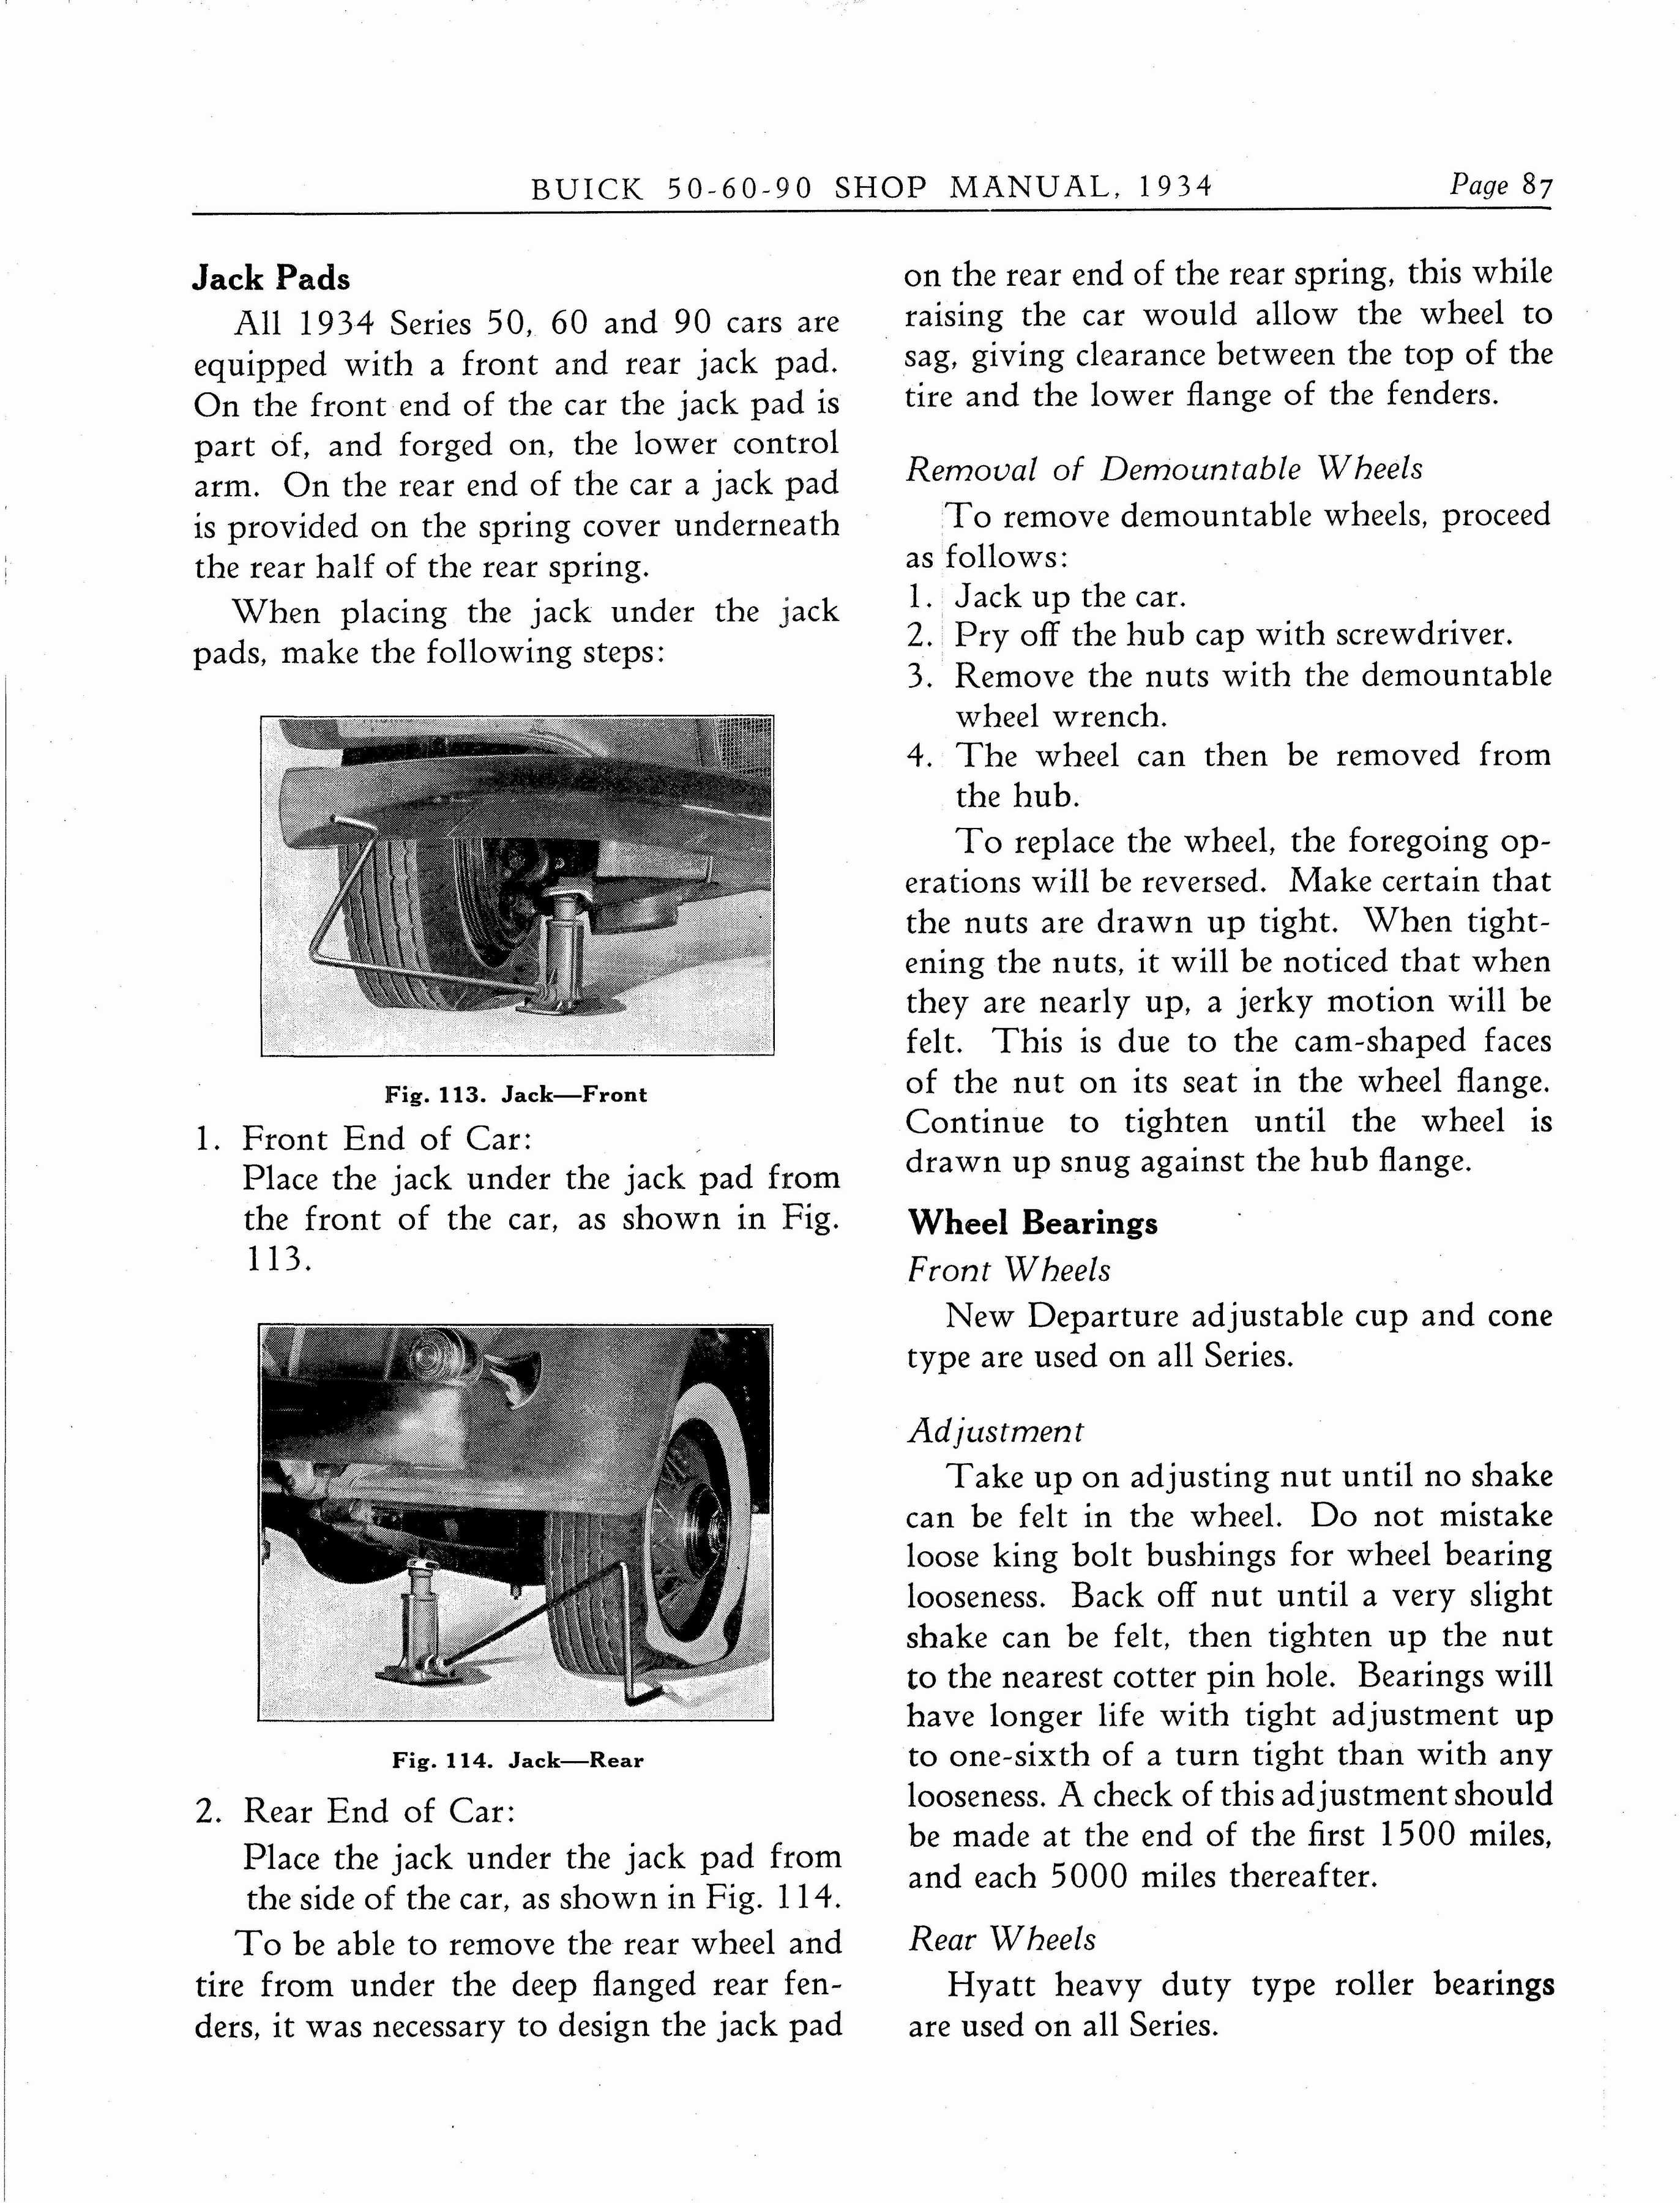 n_1934 Buick Series 50-60-90 Shop Manual_Page_088.jpg